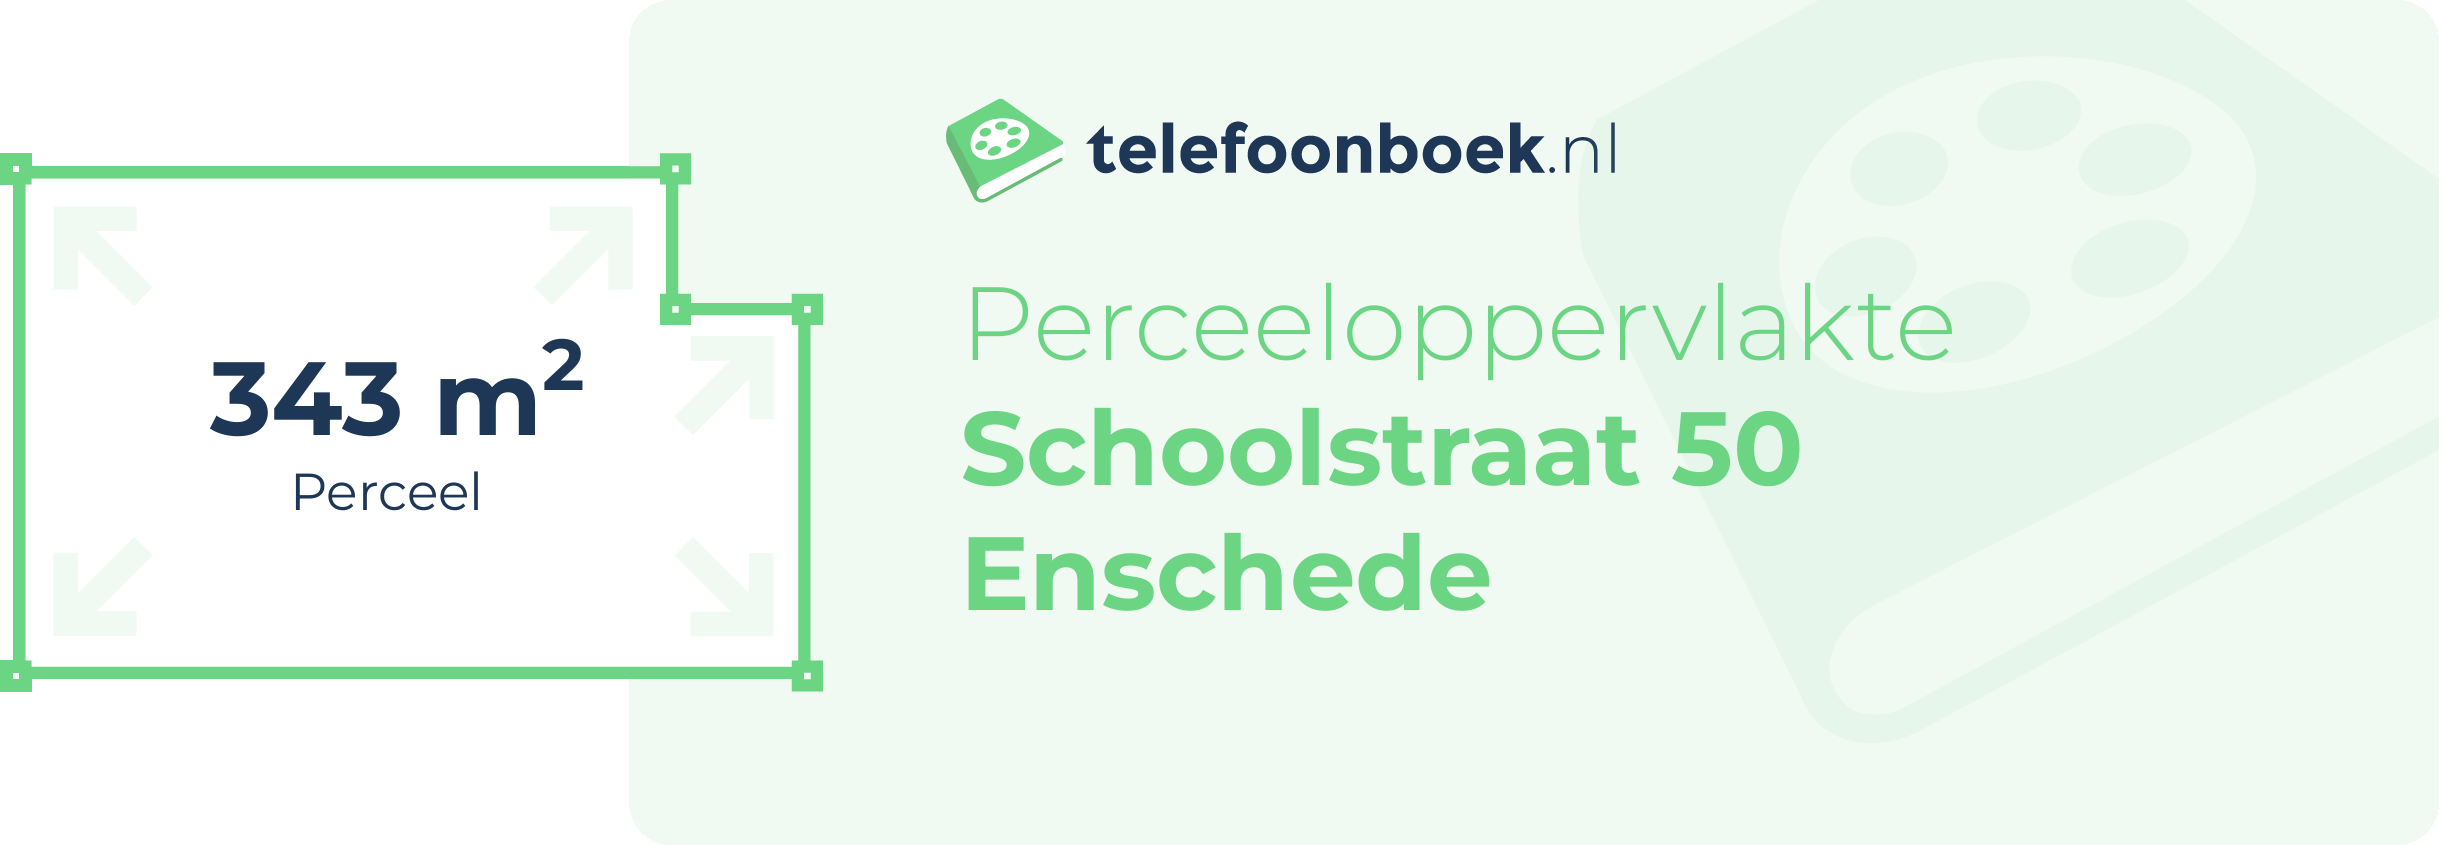 Perceeloppervlakte Schoolstraat 50 Enschede